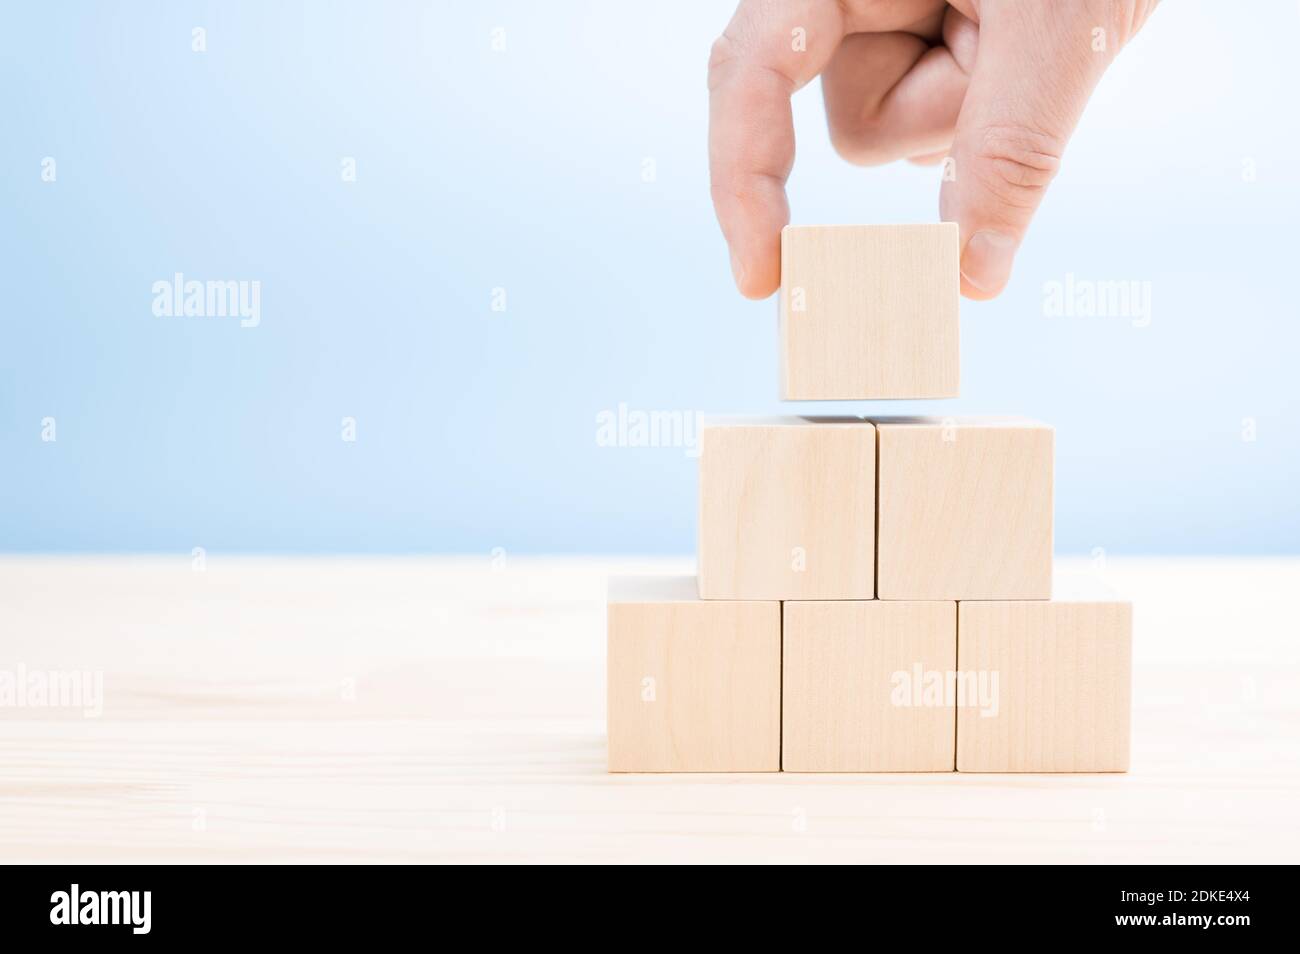 la mano si presenta costruisce una piramide di cubi di legno vergini. Un blocco di legno a forma di cubo impilato a forma di piramide senza grafica per il concetto di progettazione aziendale. Foto Stock